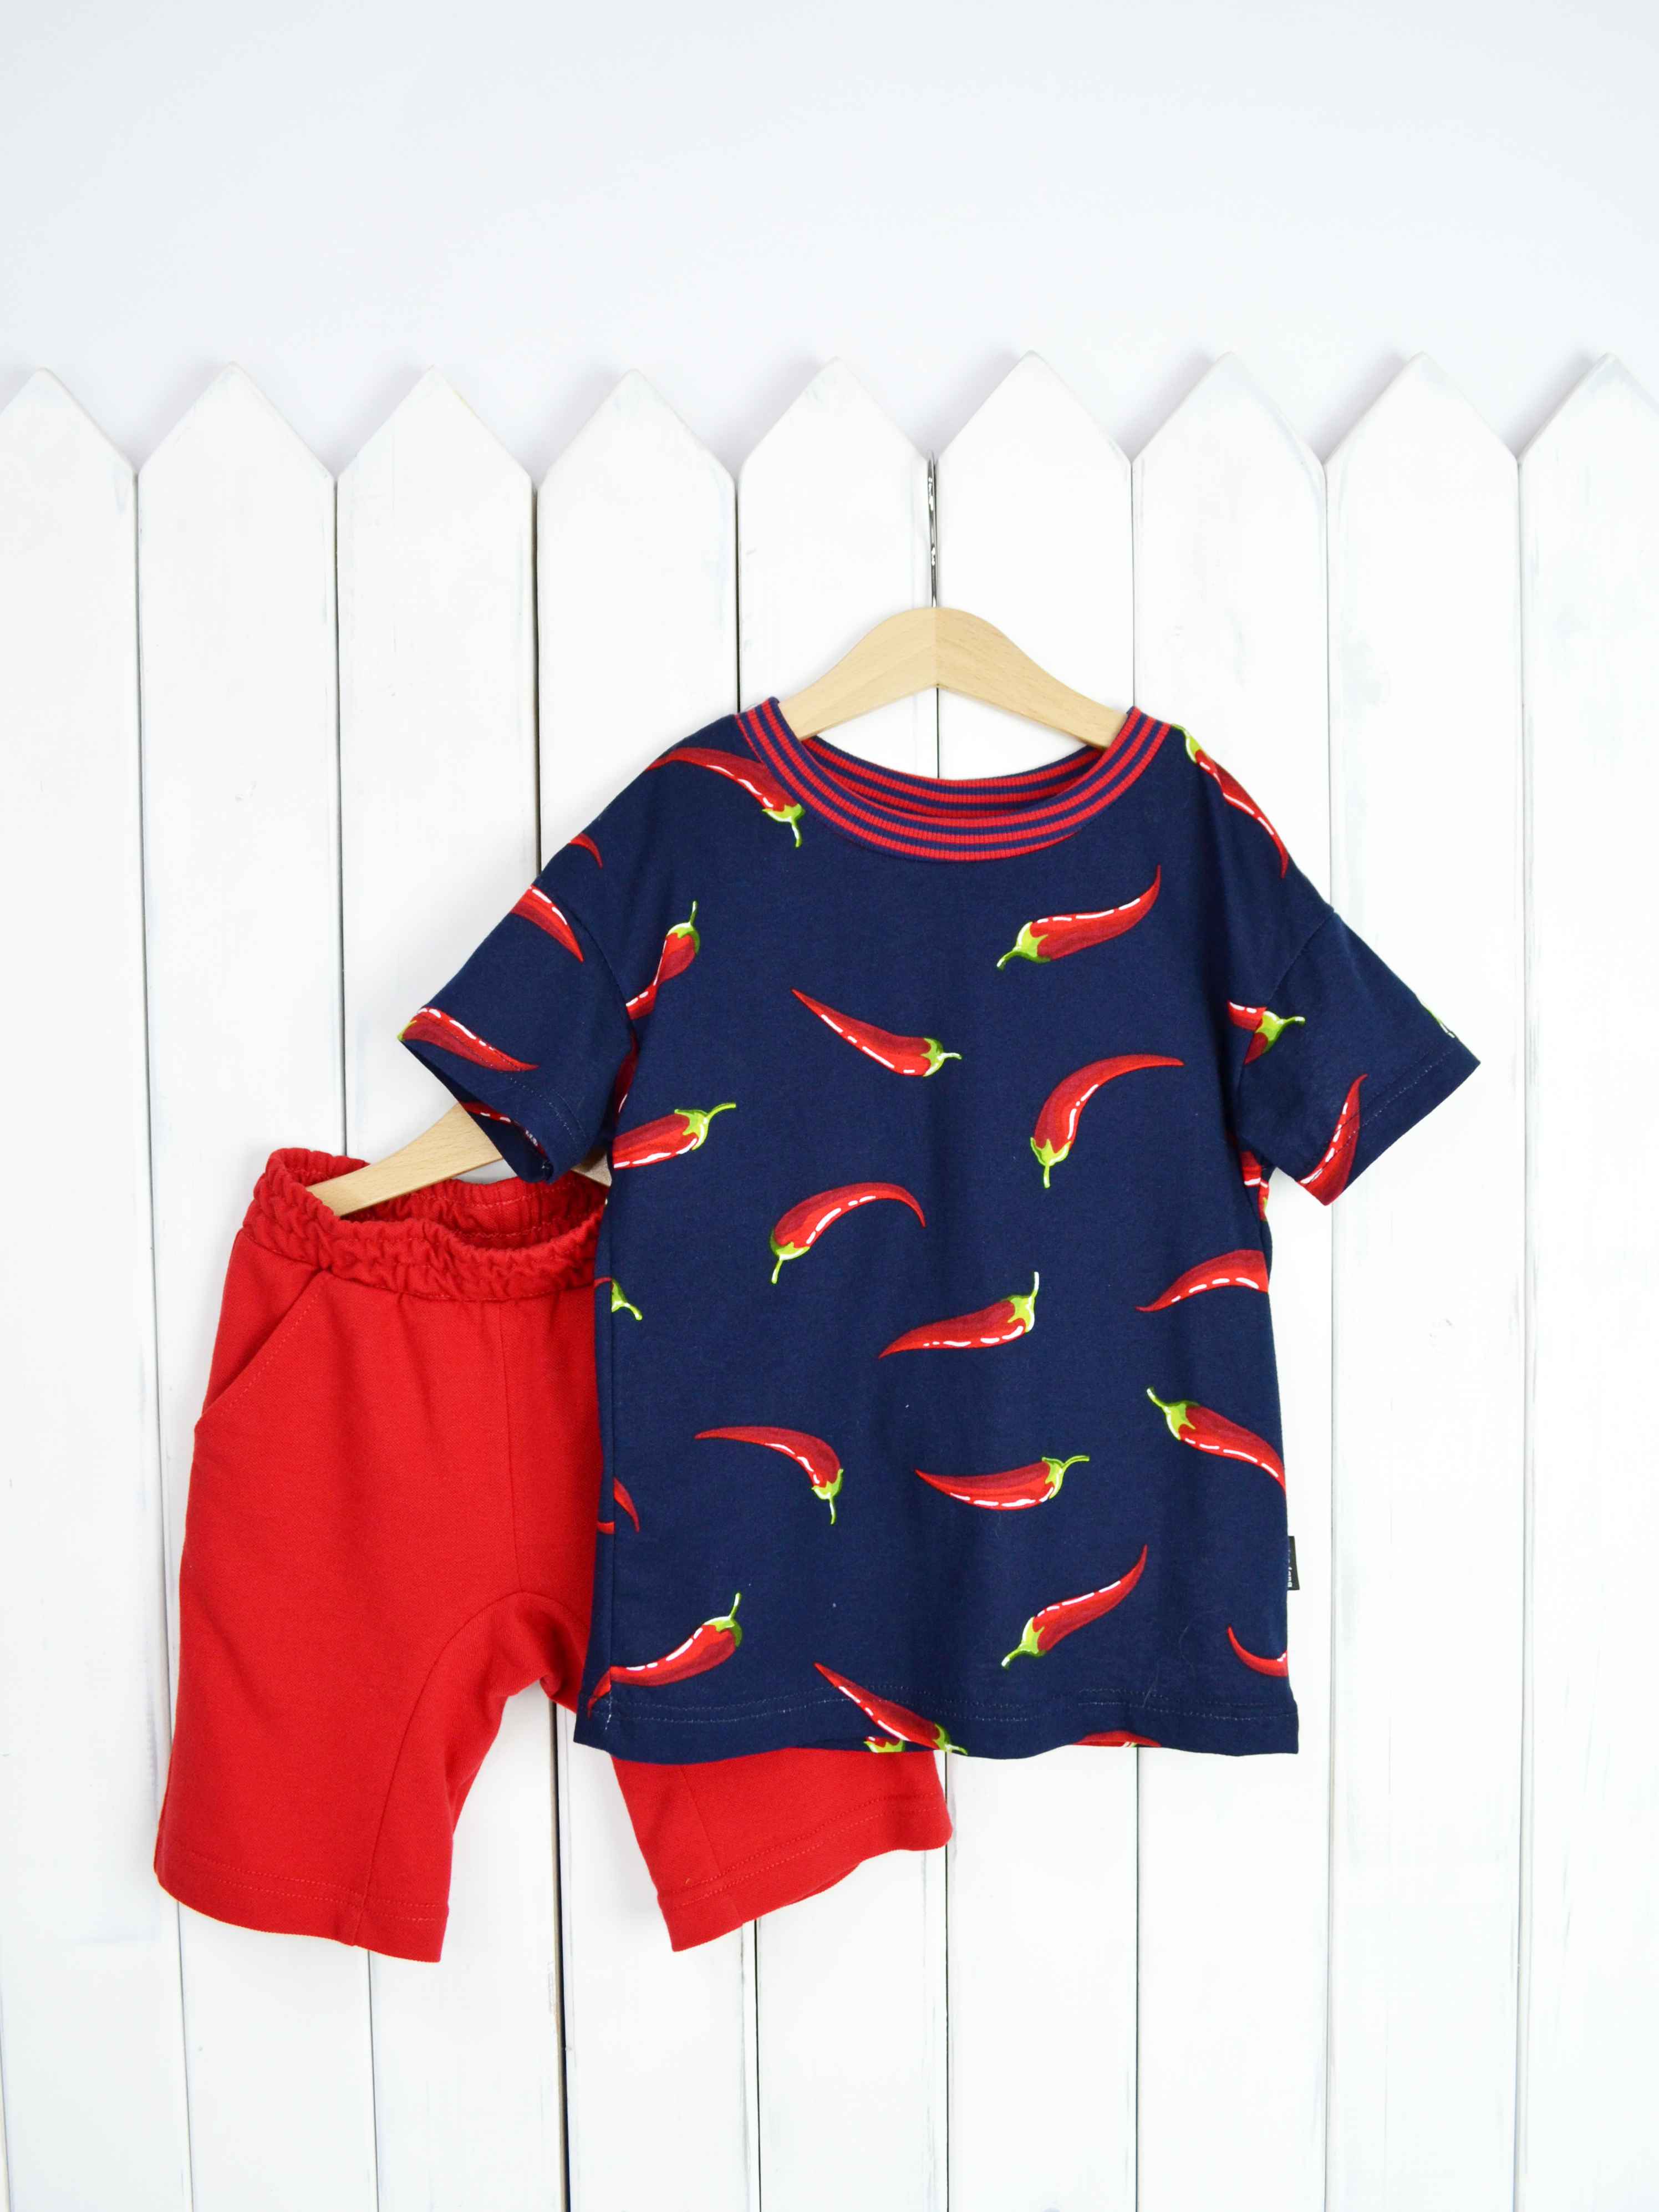 КД354/1-К Комплект детский р.98 Крутые перцы футболка+шорты/красное пике Бэби Бум